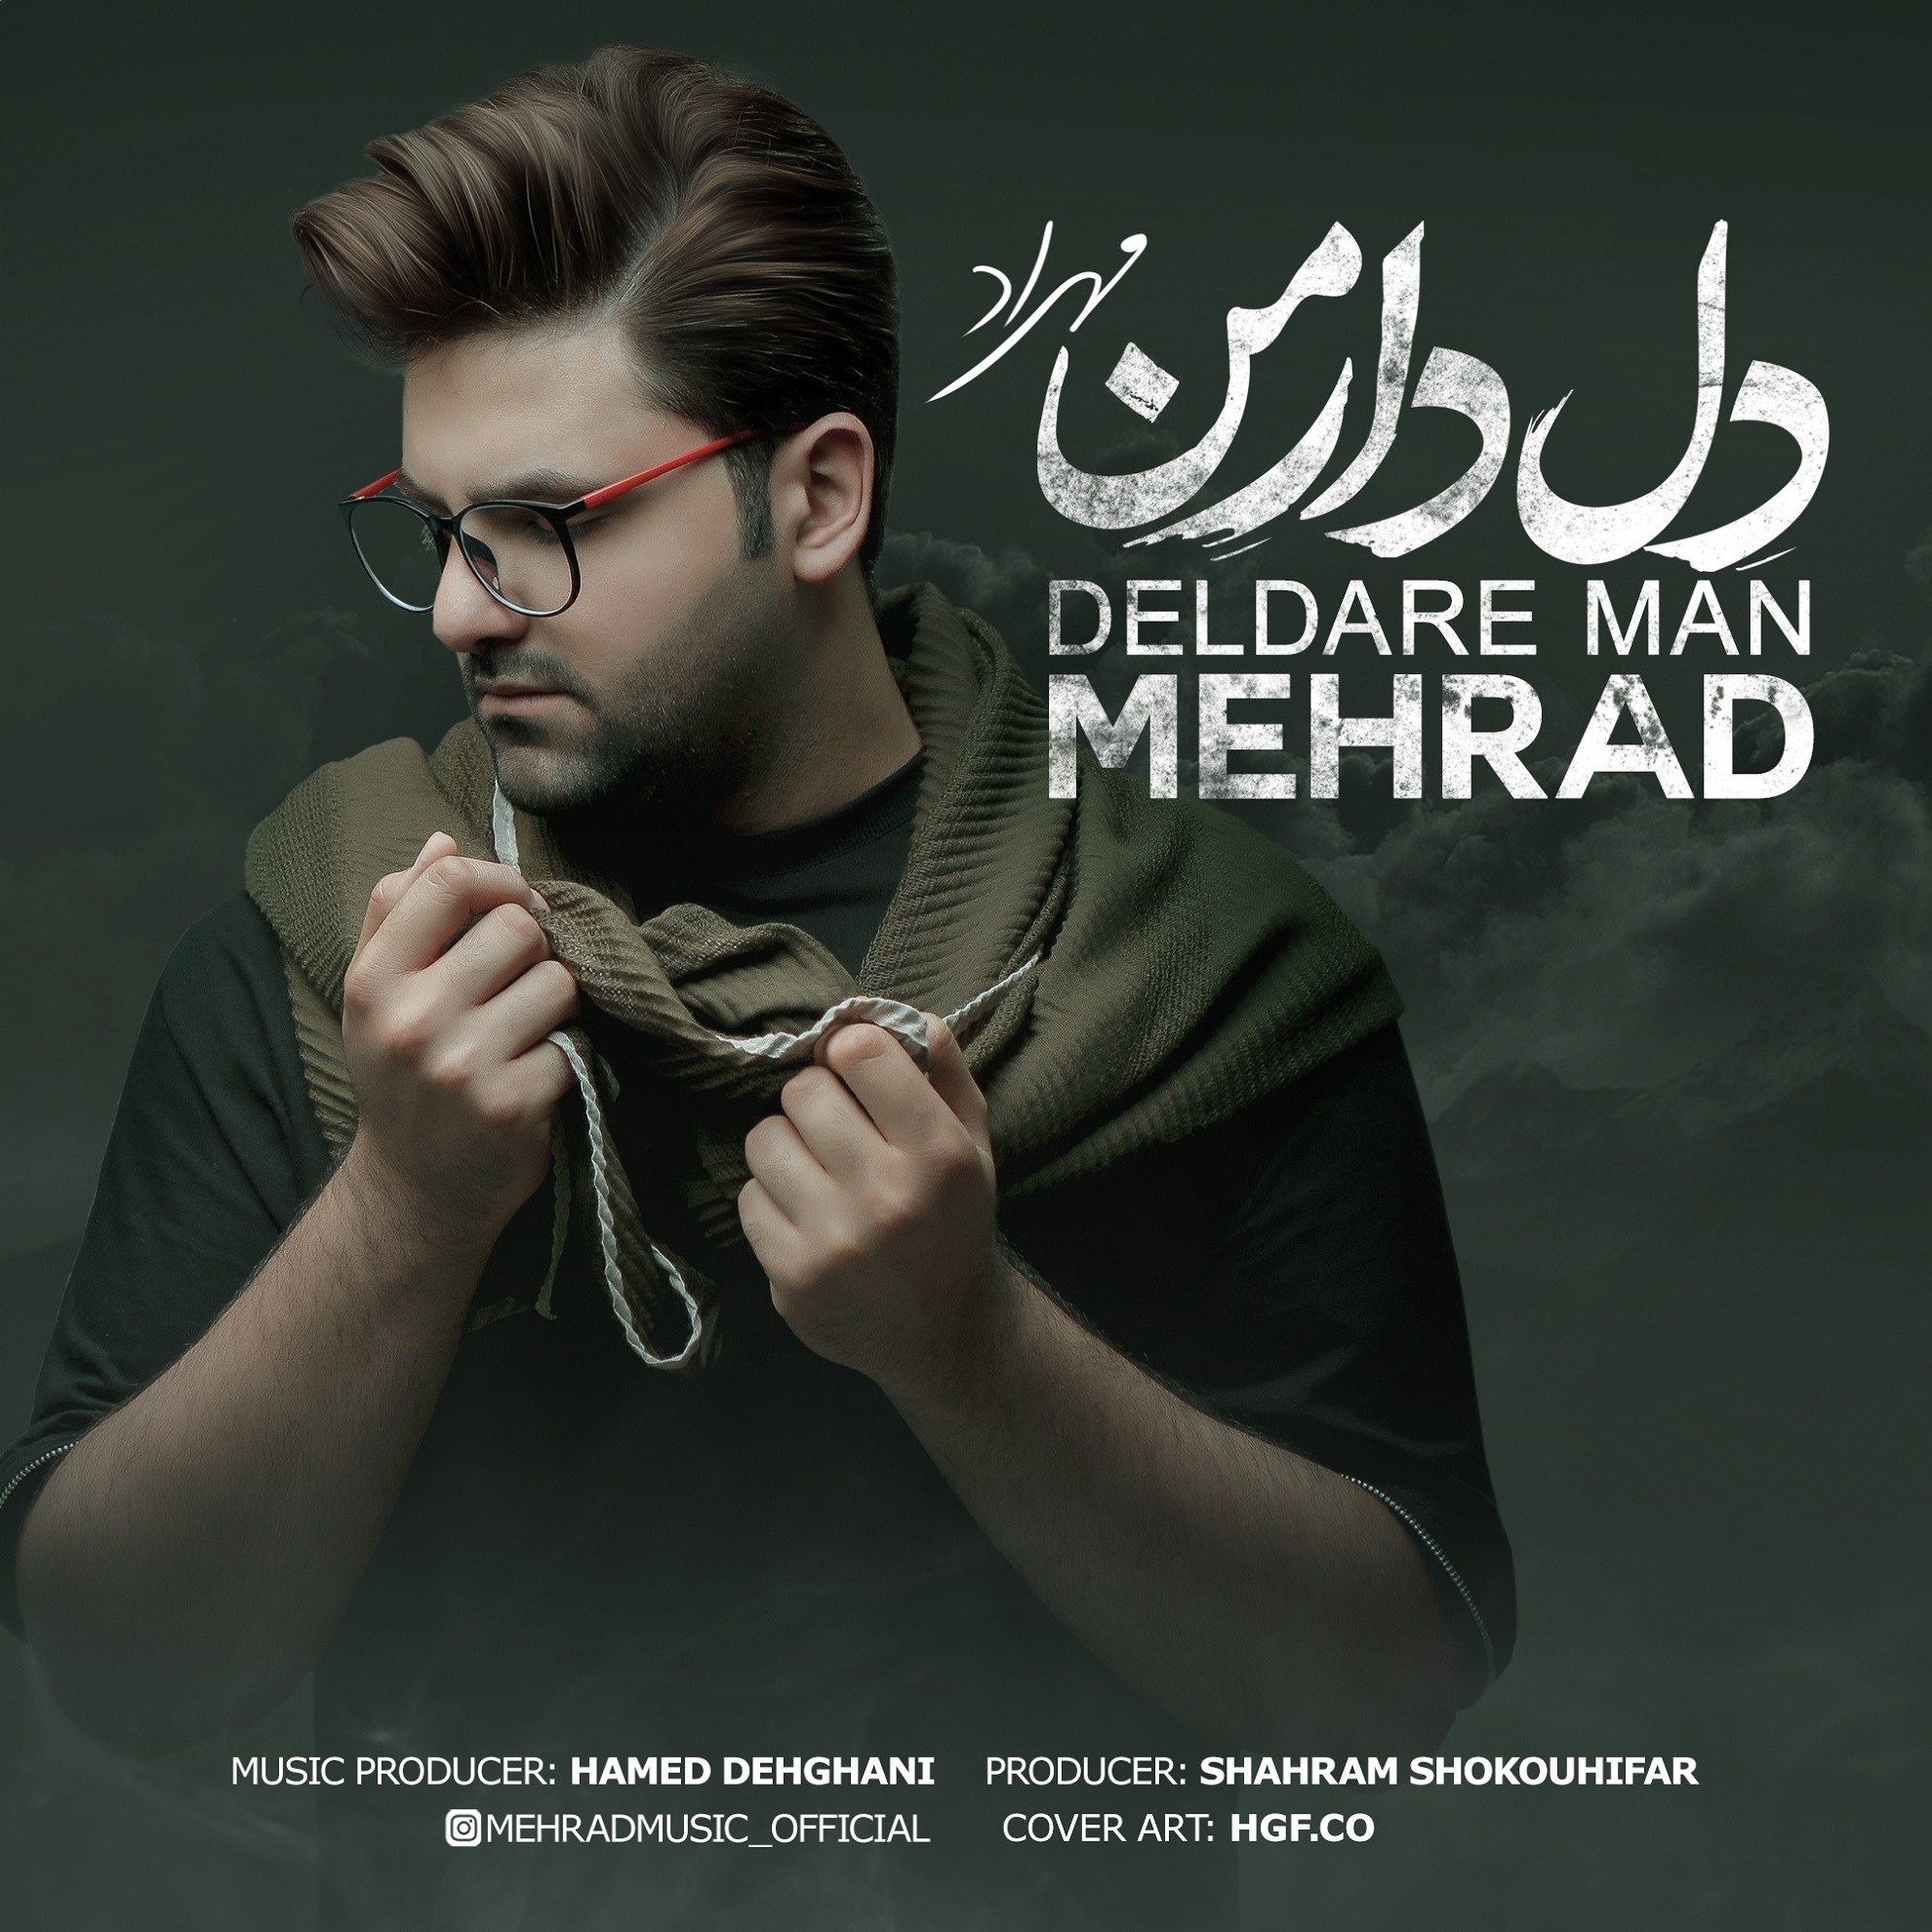  دانلود آهنگ جدید مهراد - دلدار من | Download New Music By Mehrad - Deldare Man